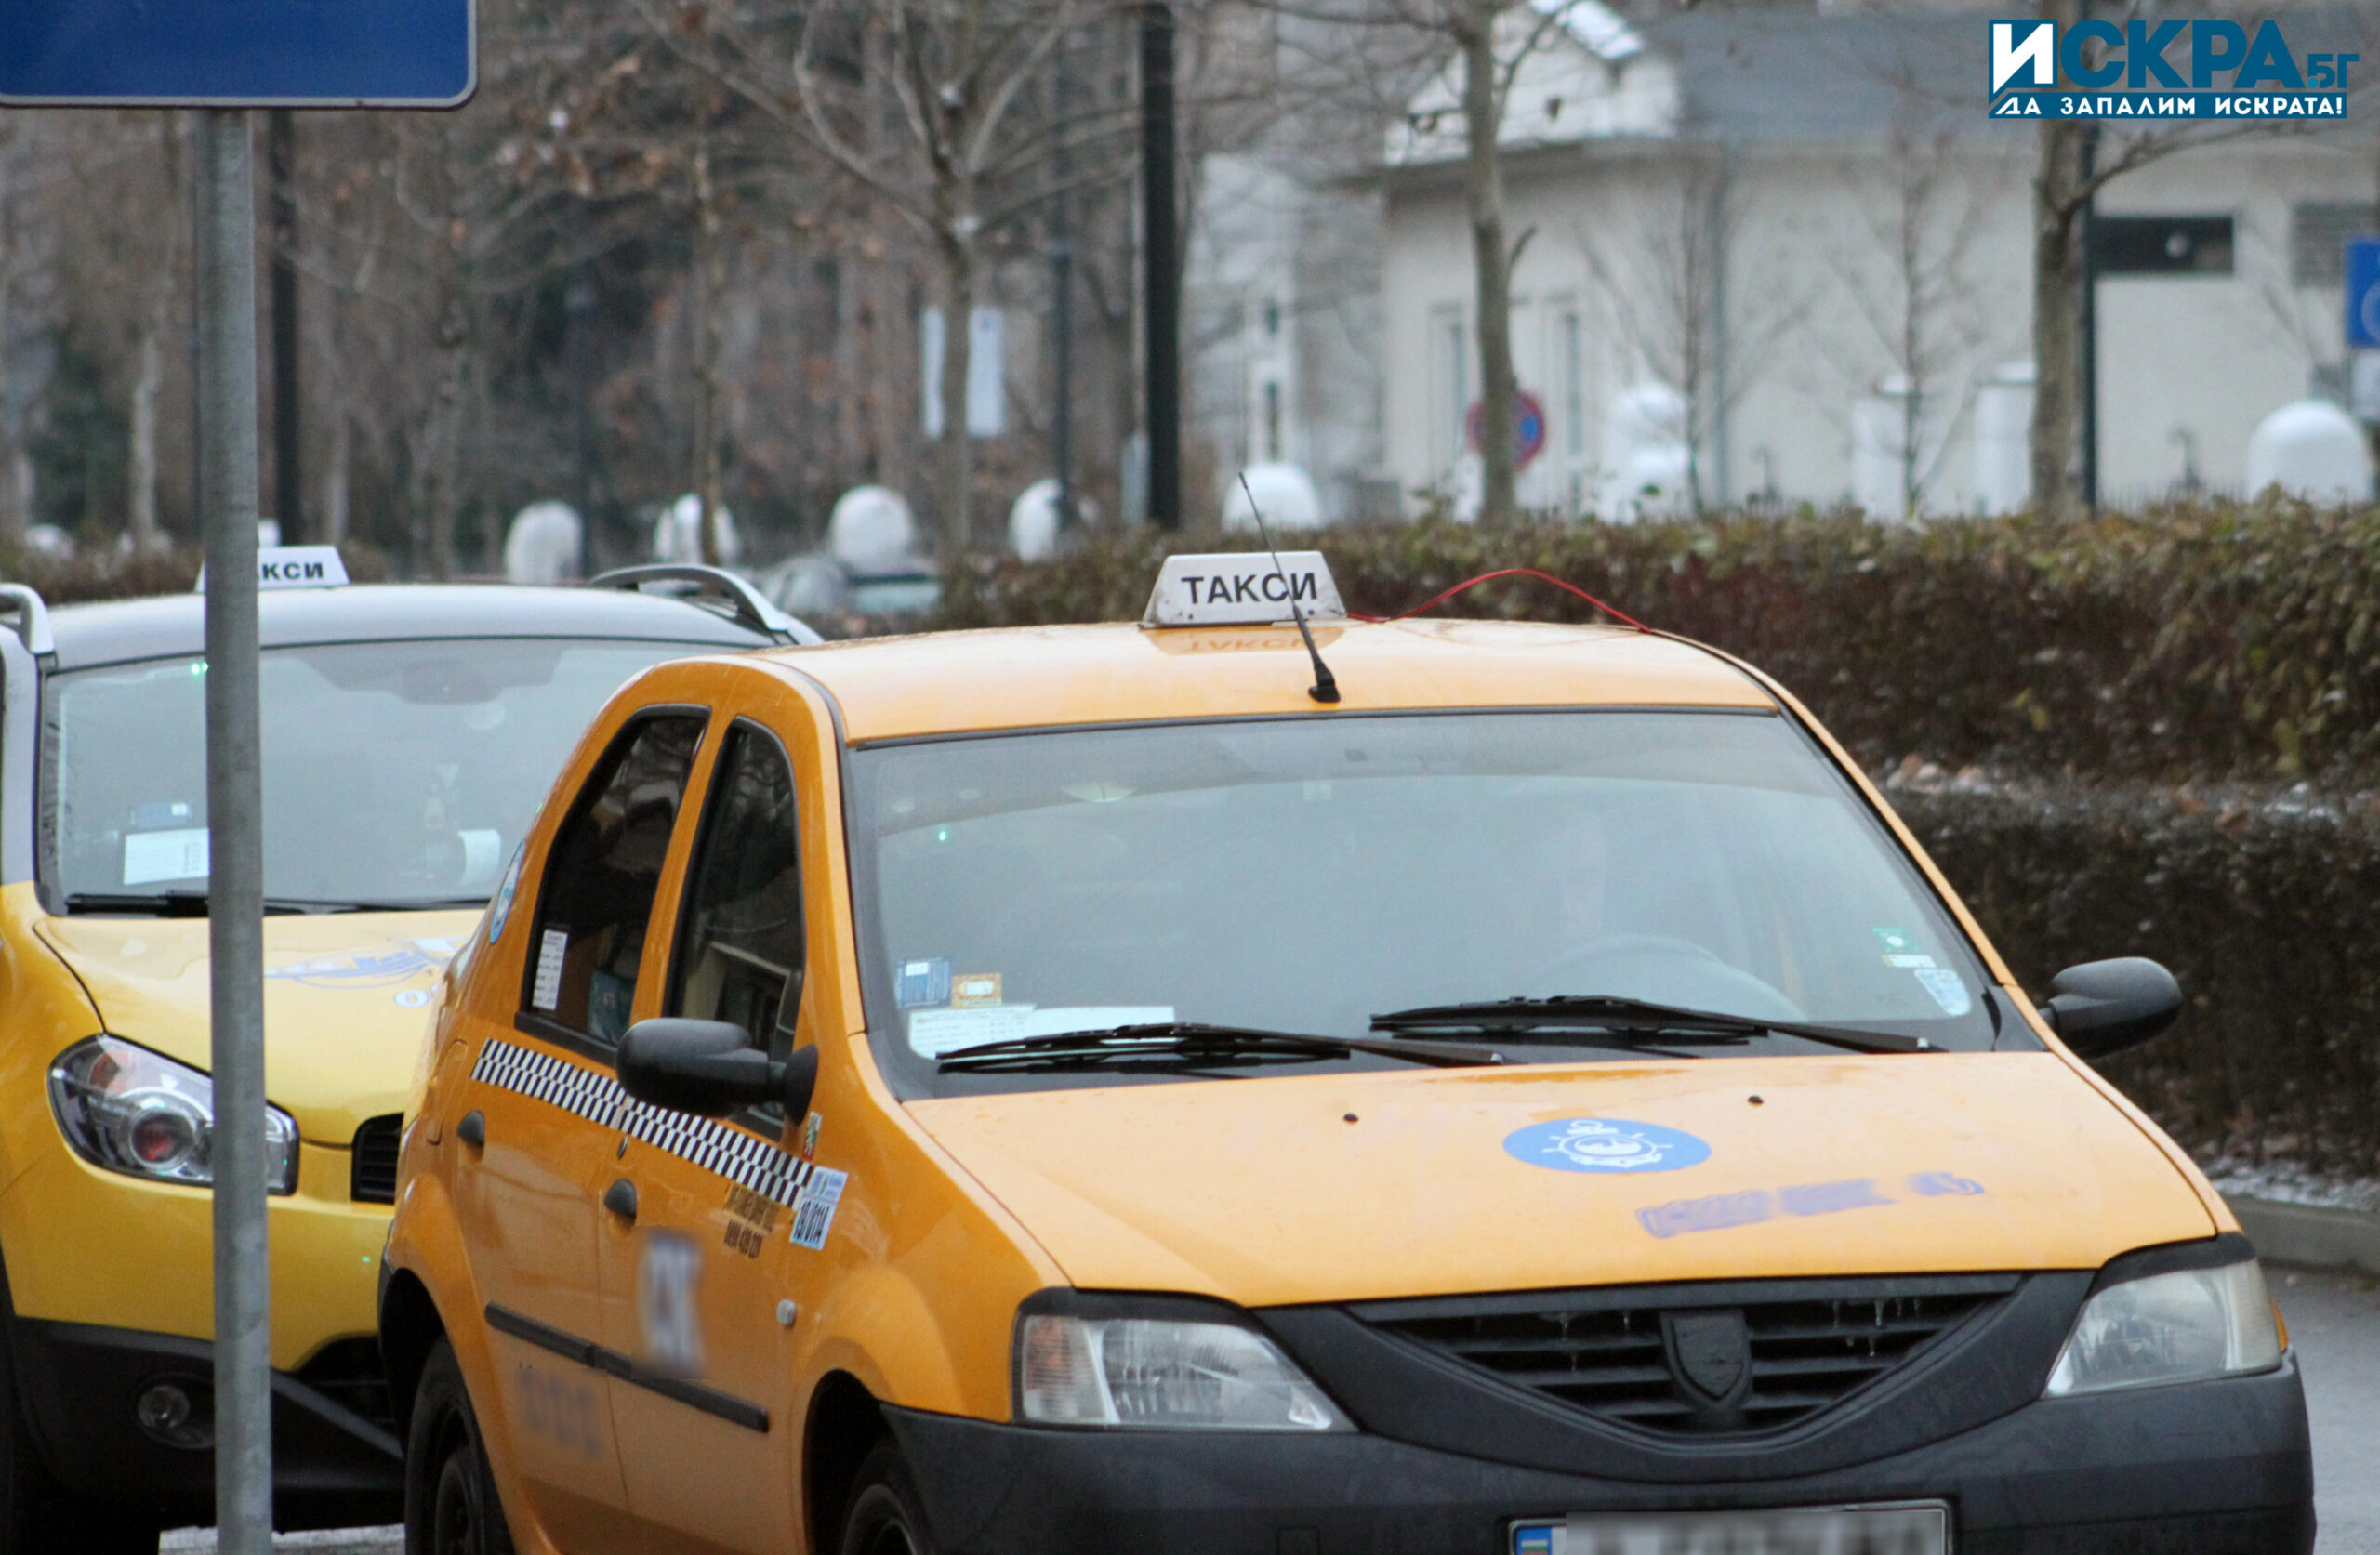 46-годишна жена е била блъсната от таксиметров автомобил, който впоследствие